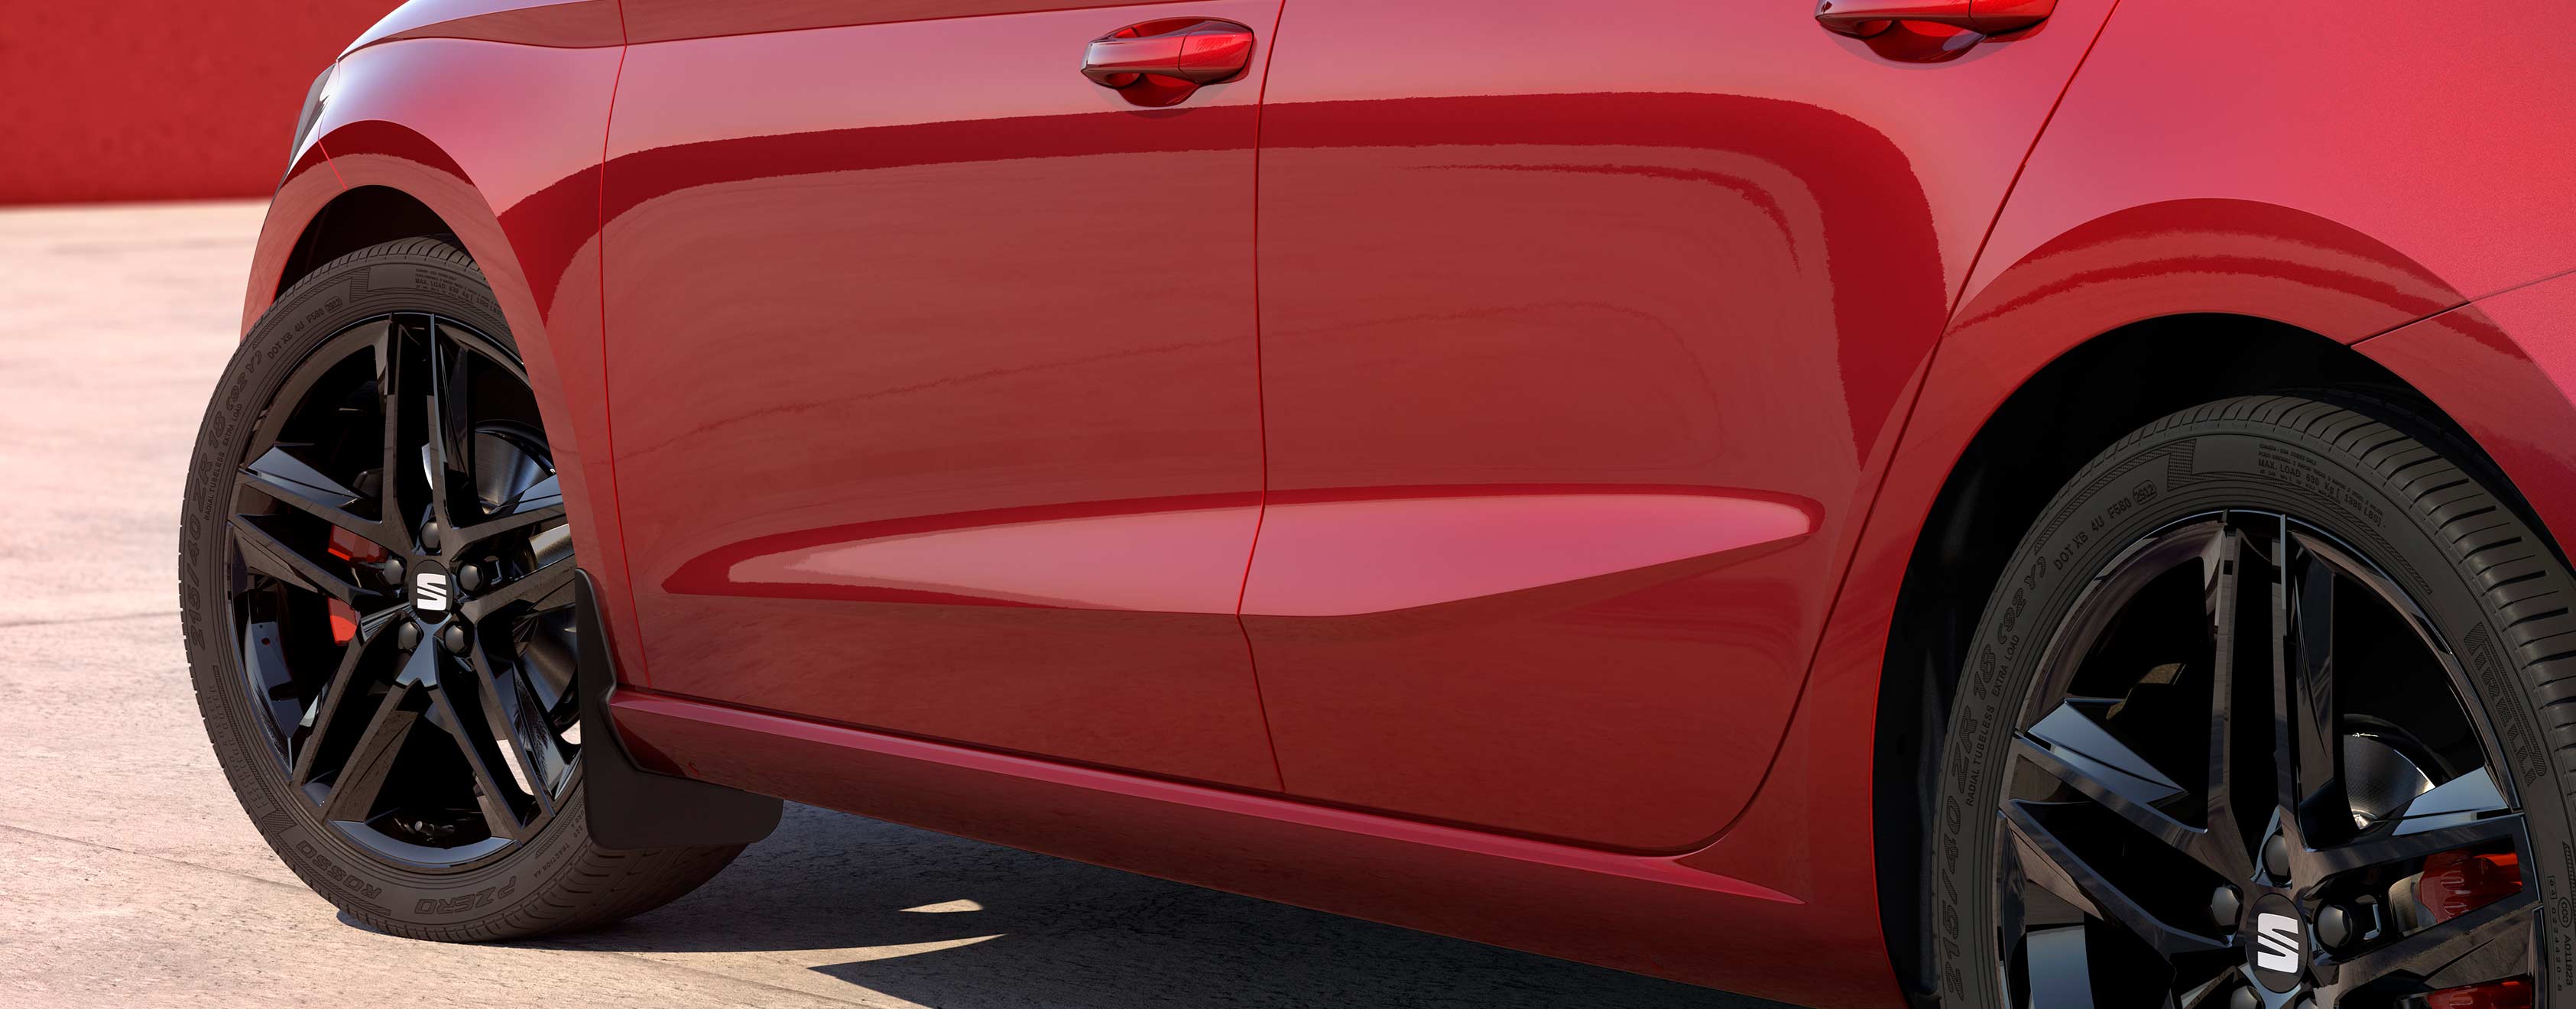 SEAT Ibiza couleur Desire Red et ses garde-boues avant et arrière